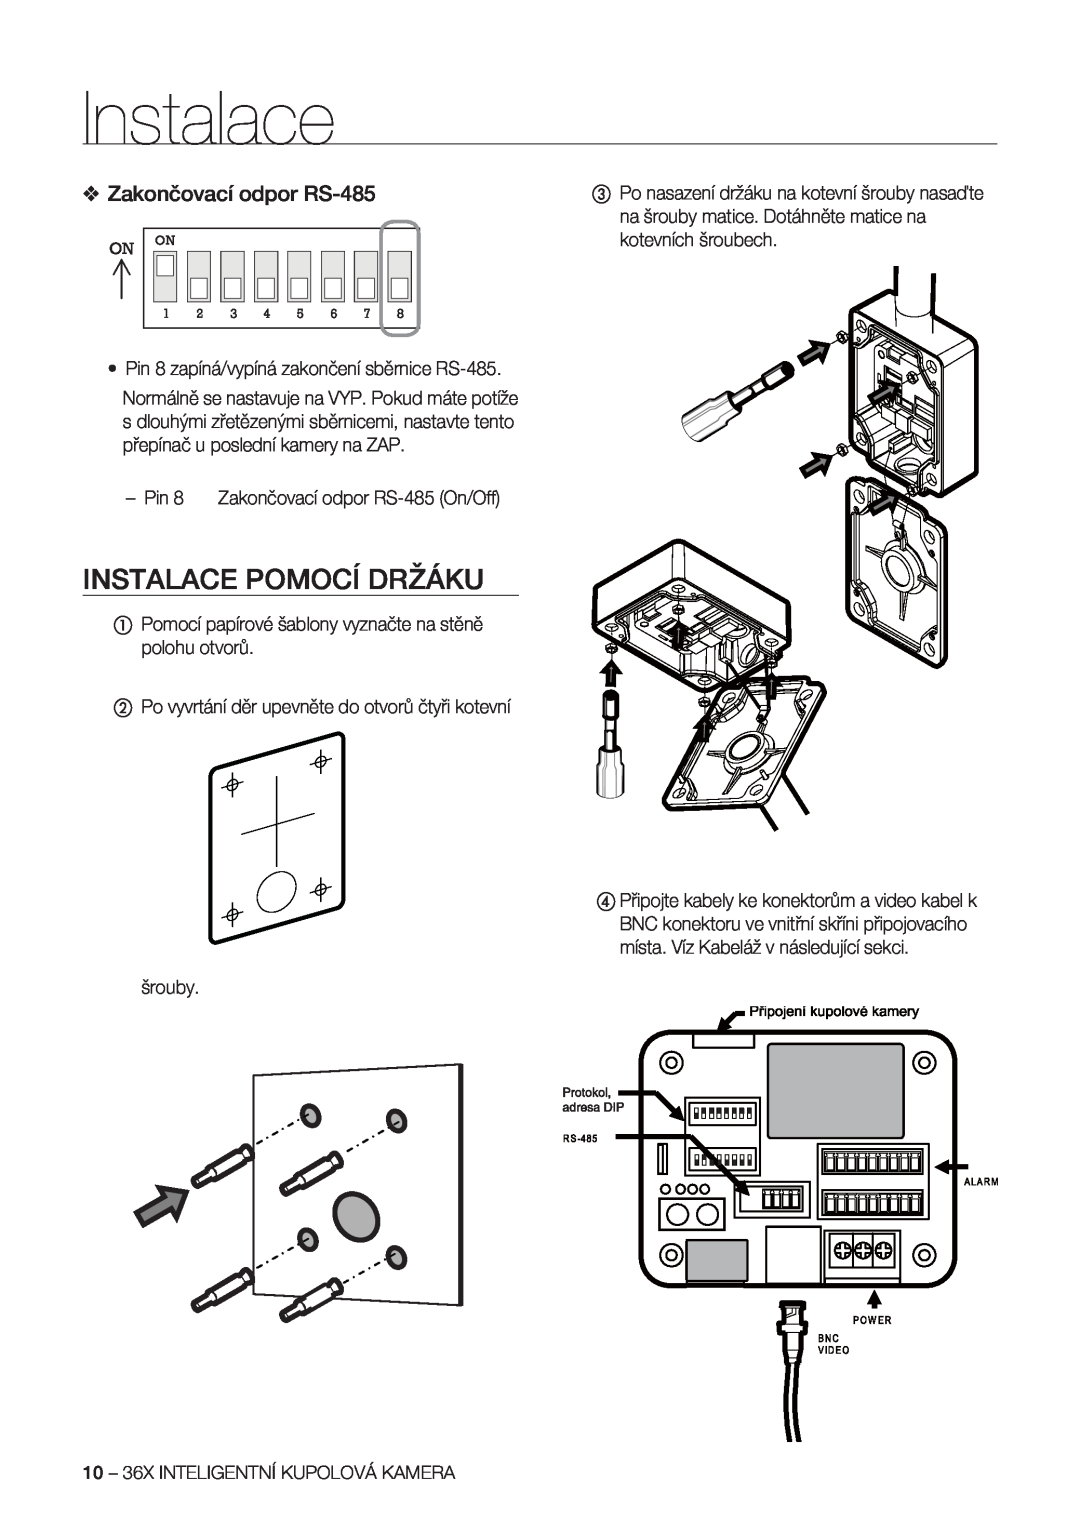 Samsung SCC-C7478P manual Instalace Pomocí Držáku, Zakončovací odpor RS-485 